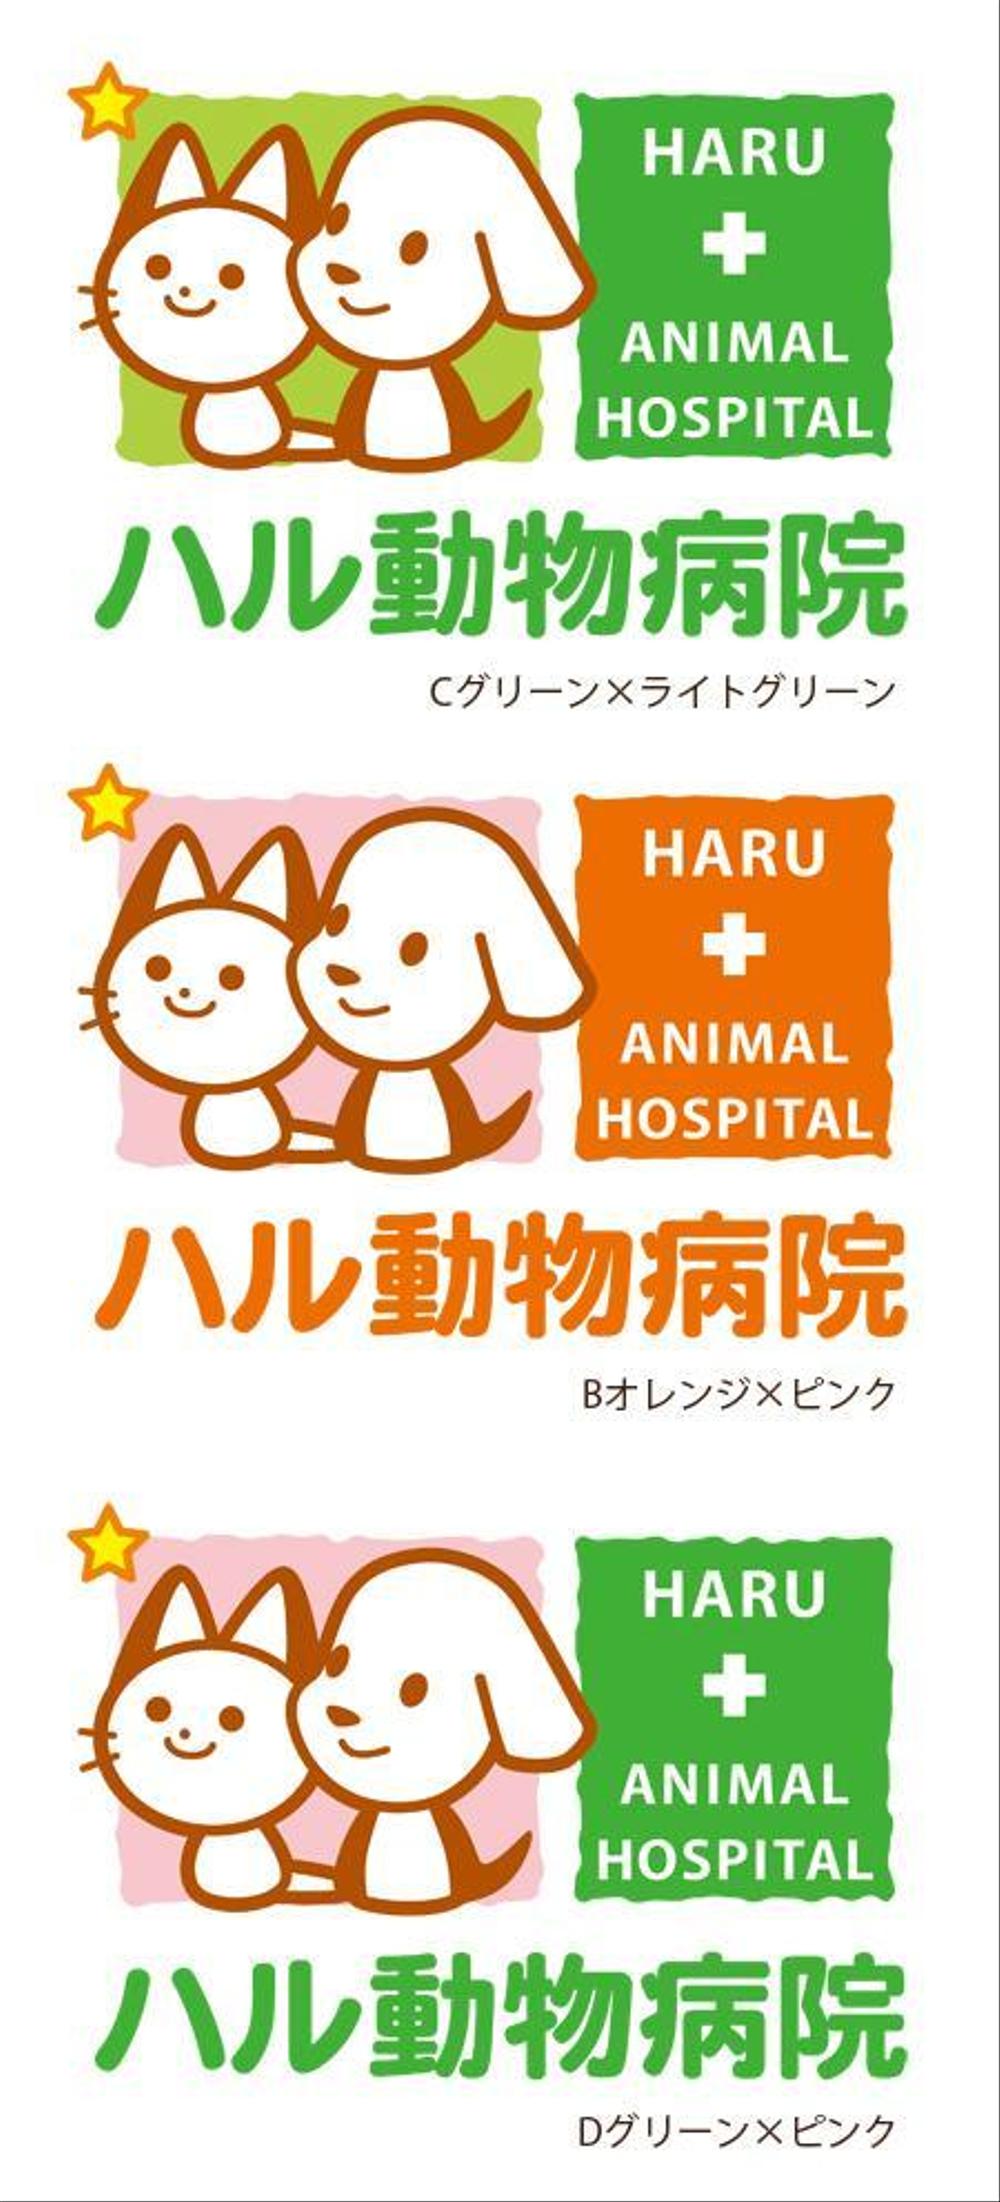 動物病院のロゴマーク・看板のデザイン